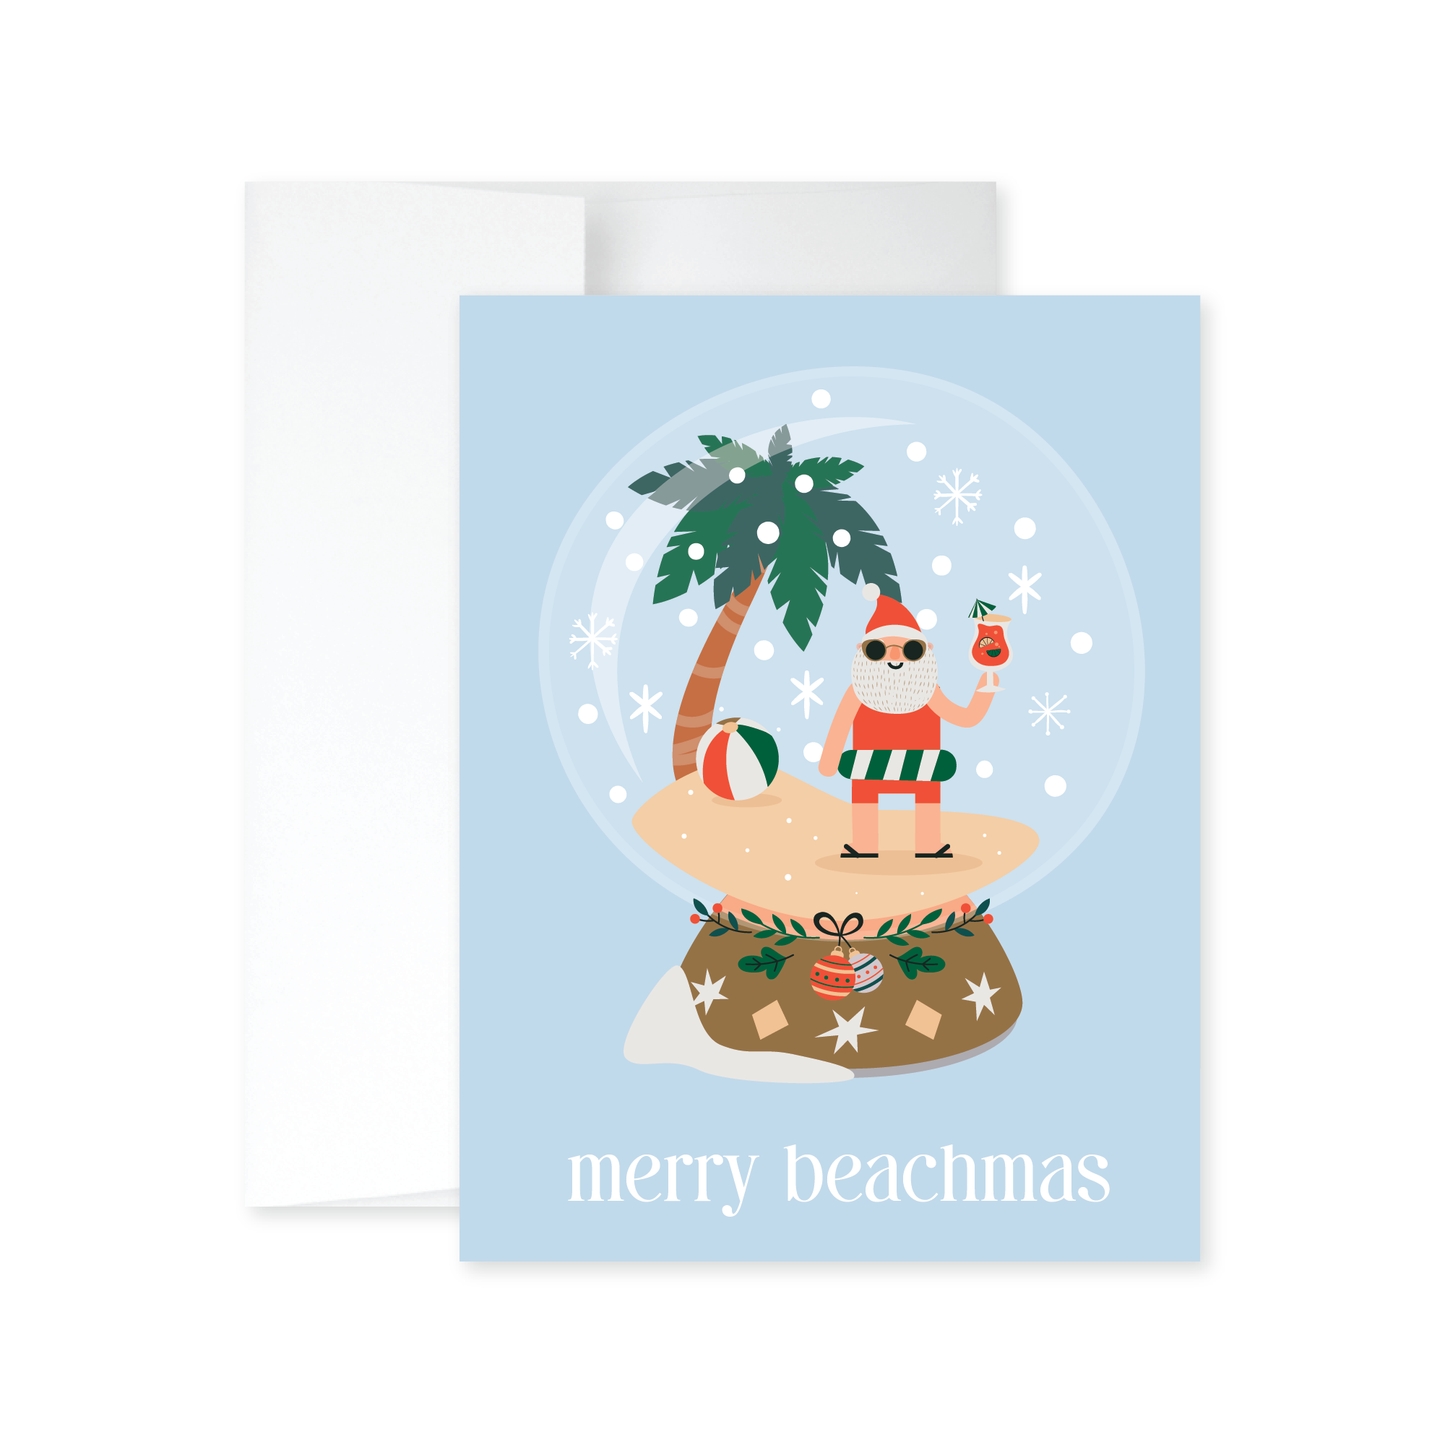 Merry Beachmas Christmas Card